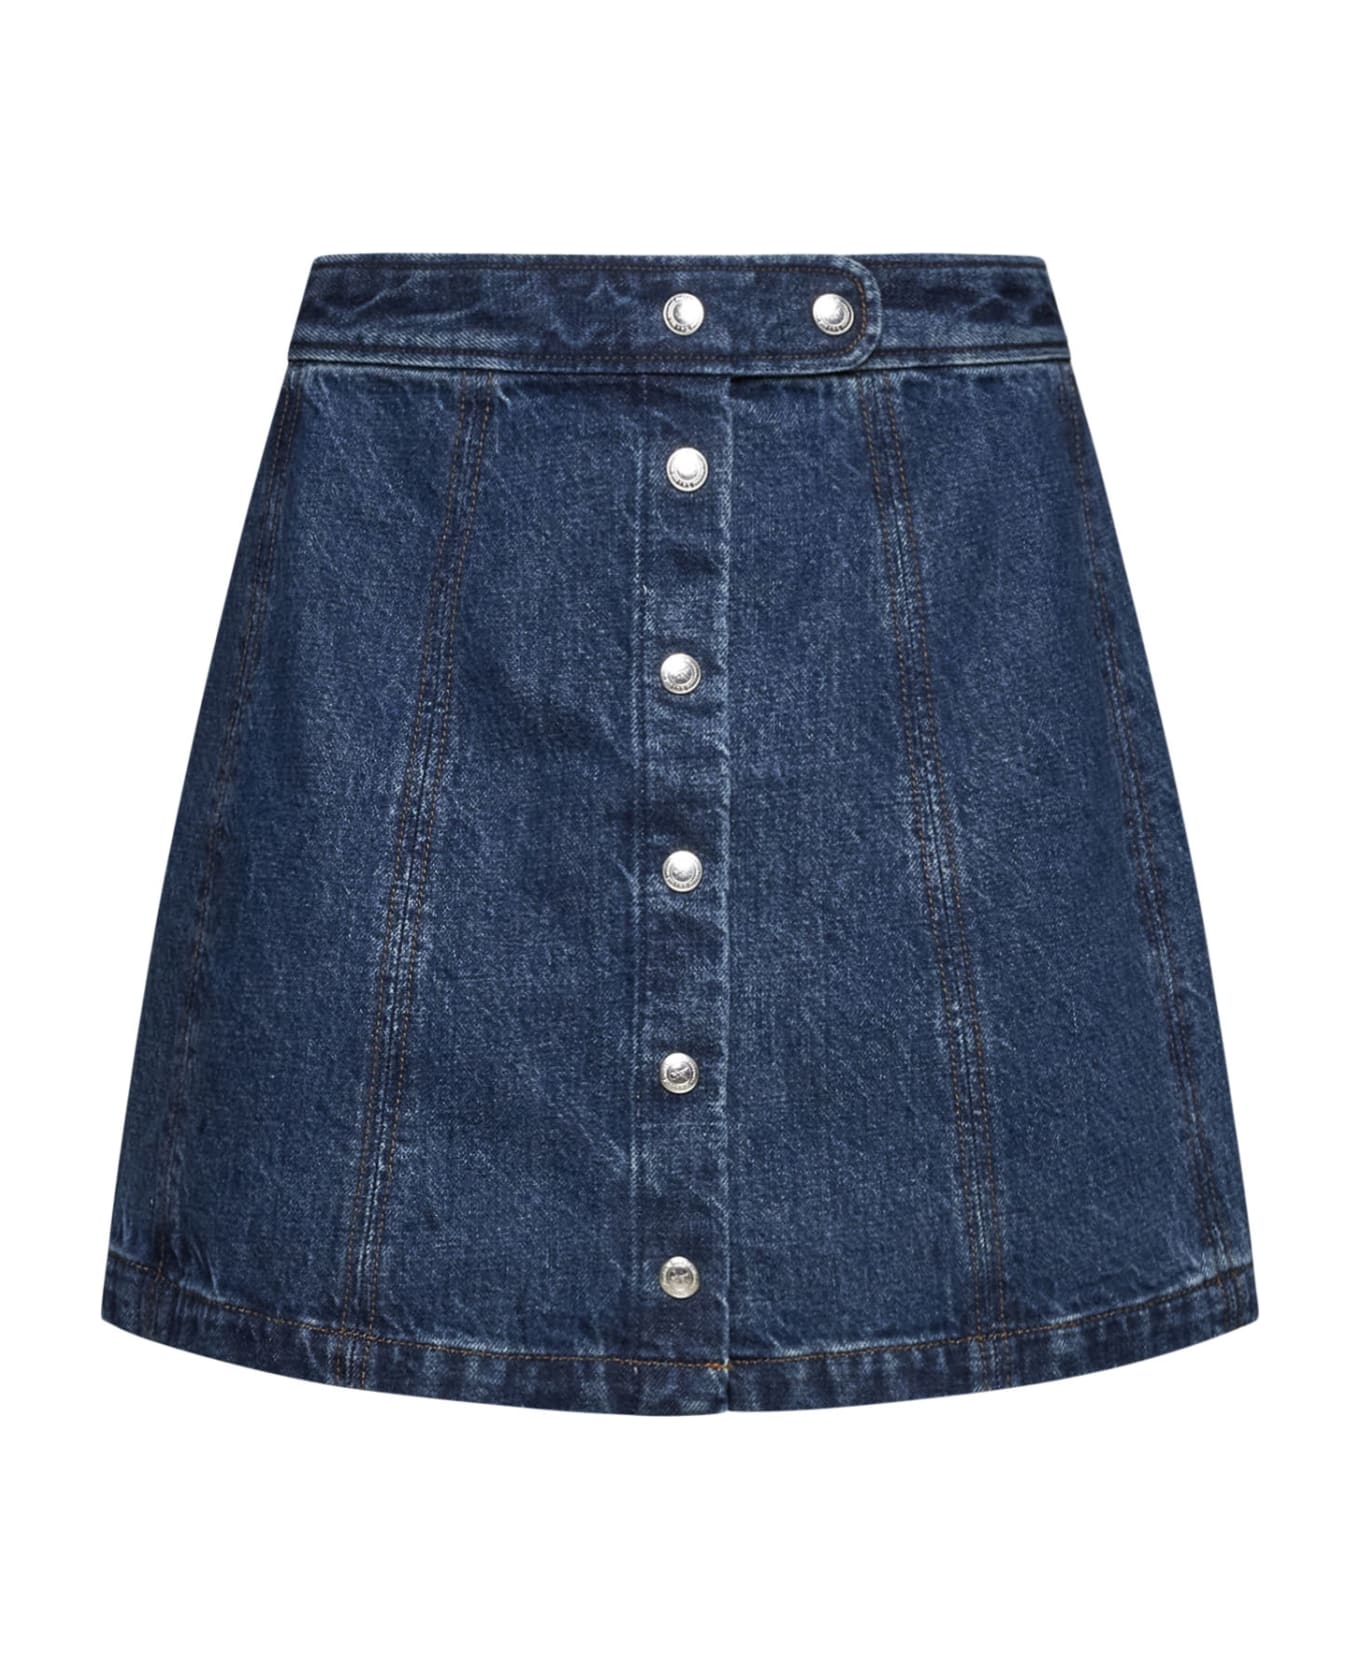 A.P.C. Poppy Denim Miniskirt - Washed indigo